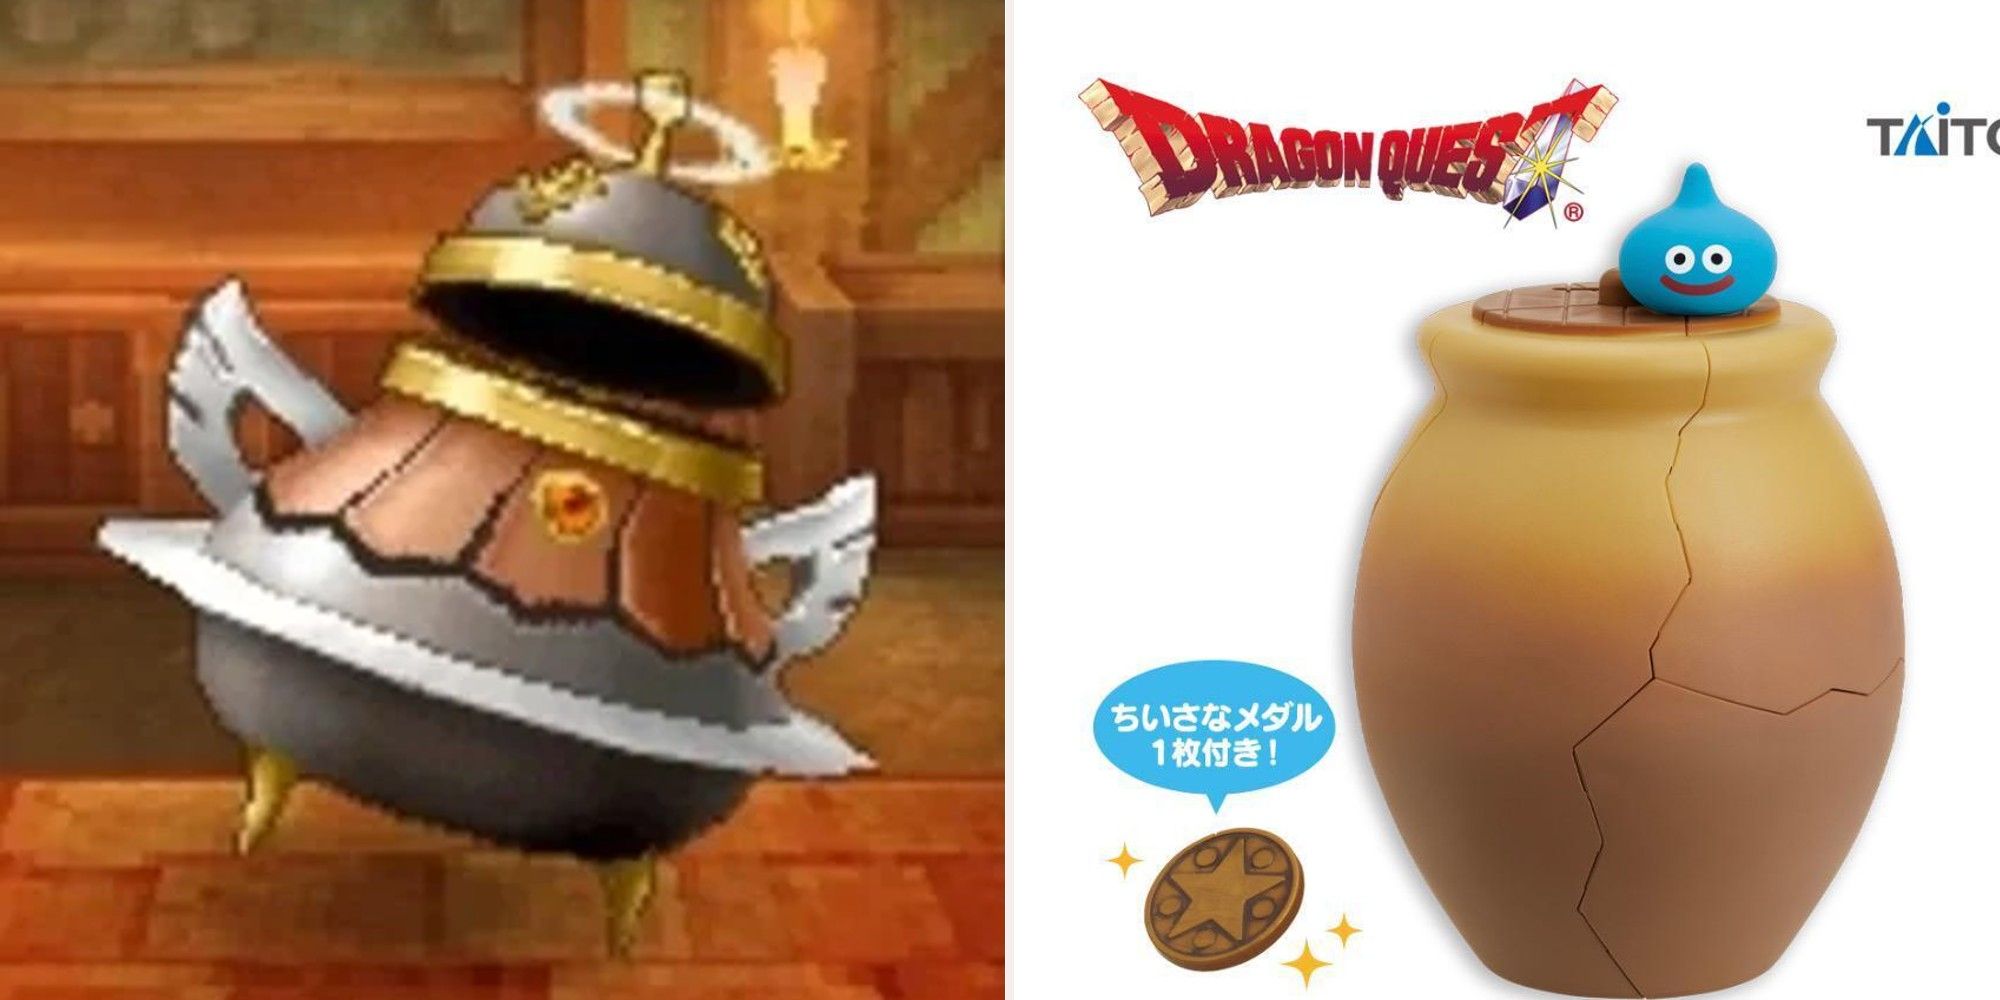 Dragon Quest  Krak Pot and piggy bank pot